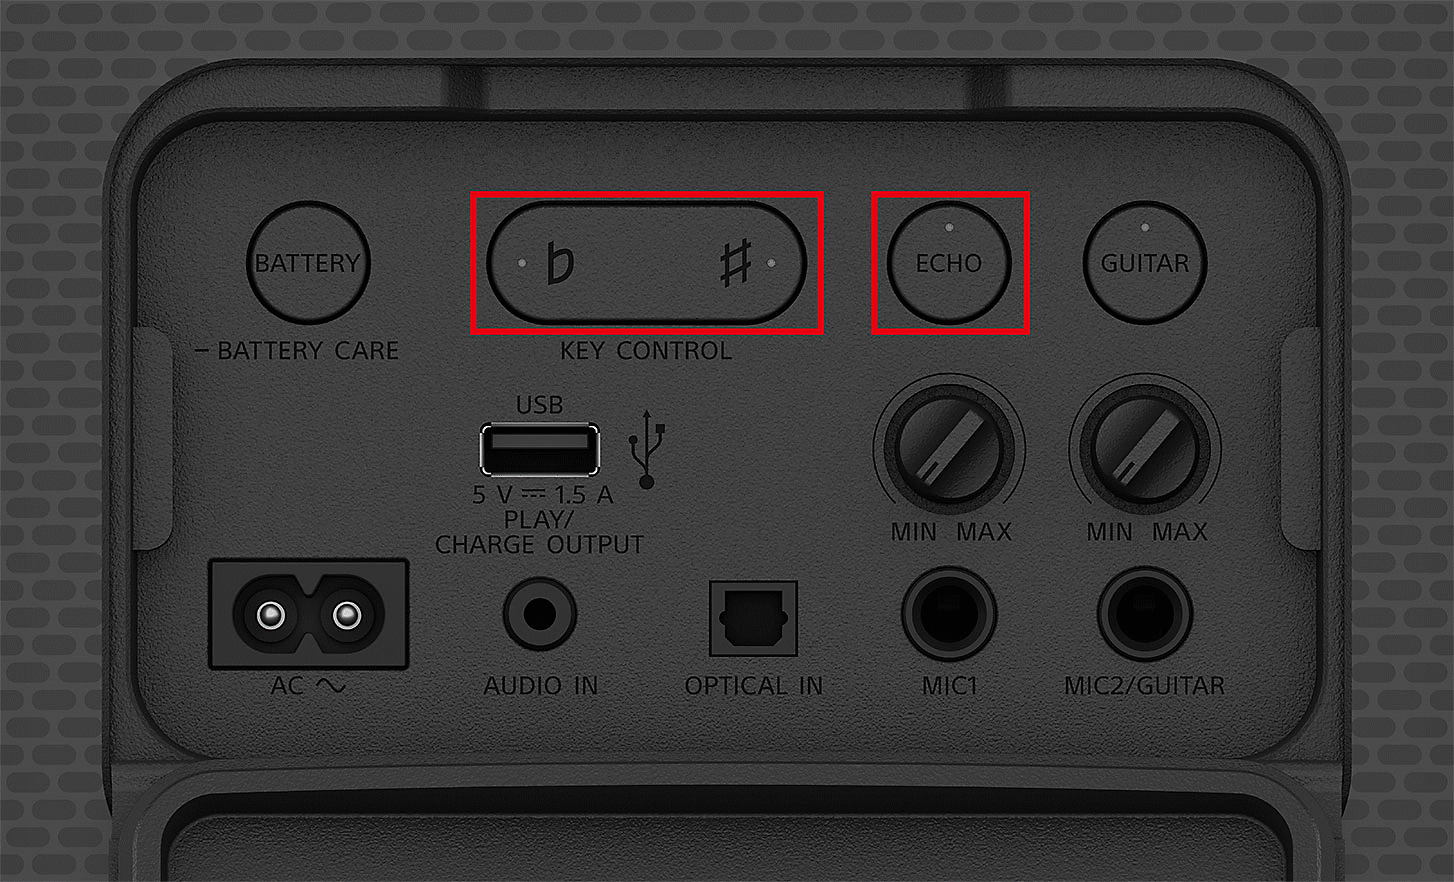 Zbliżenie panelu sterowania głośnika SRS-XV800. Przyciski Echo i Tonacja są wyróżnione czerwonymi prostokątami